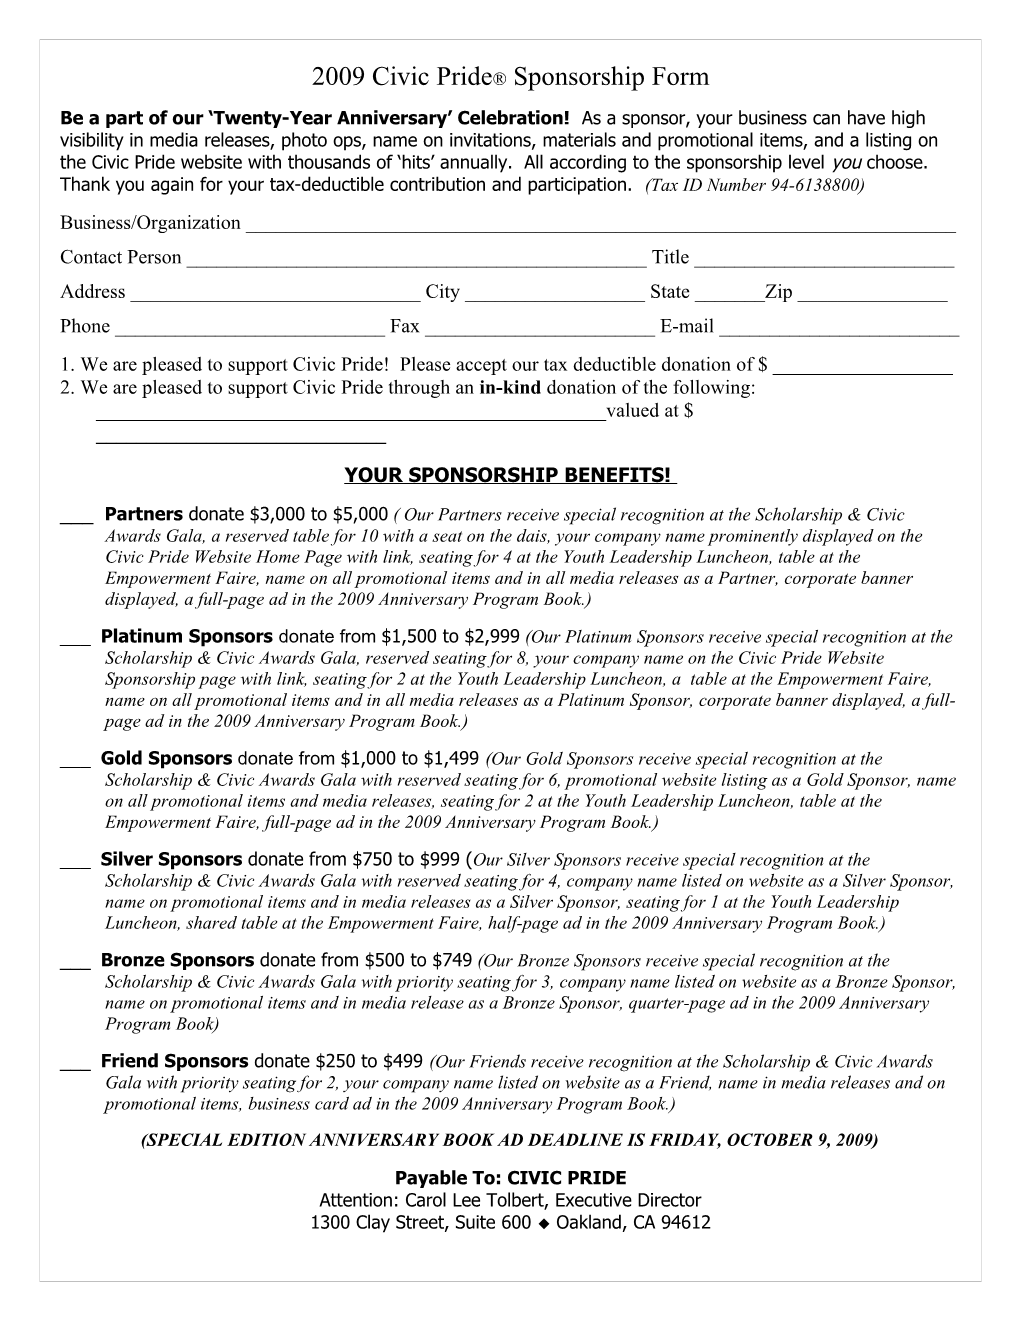 2001 Civic Pride Sponsorship Form